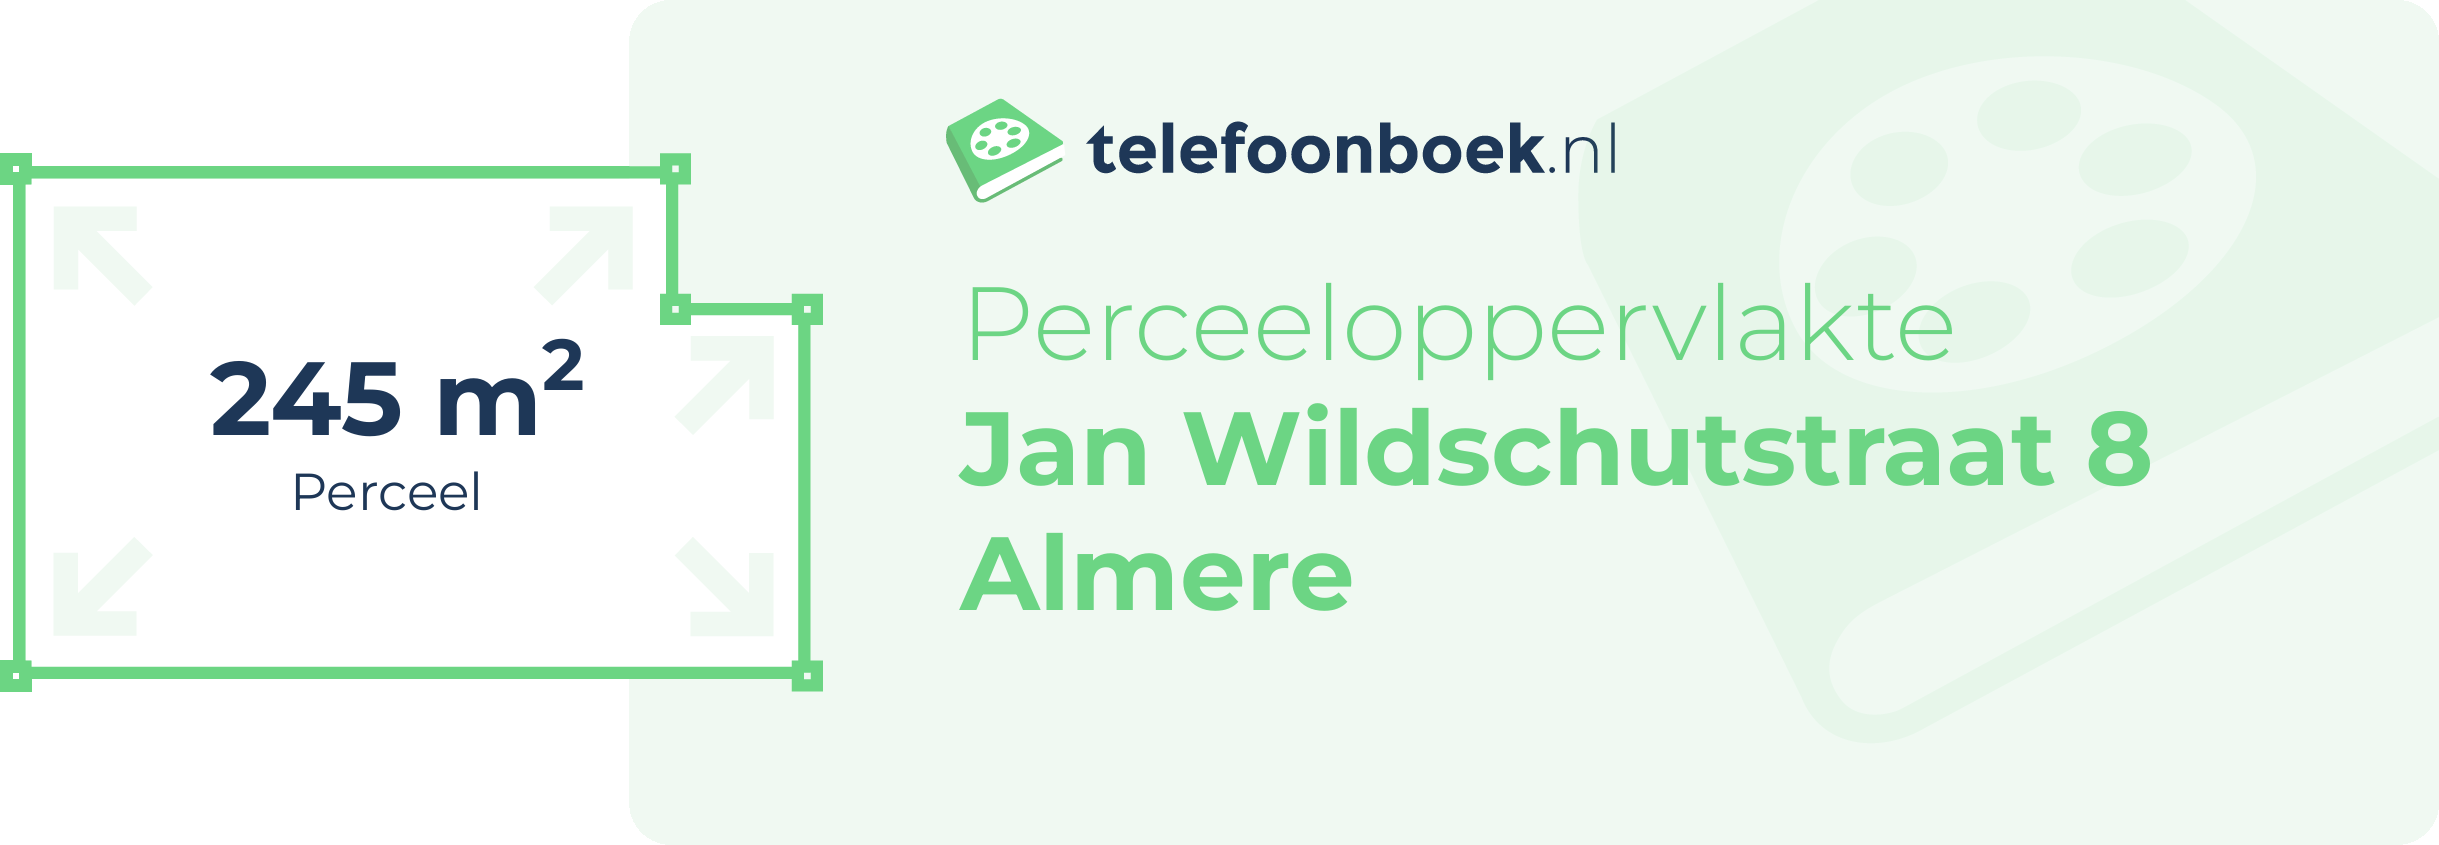 Perceeloppervlakte Jan Wildschutstraat 8 Almere